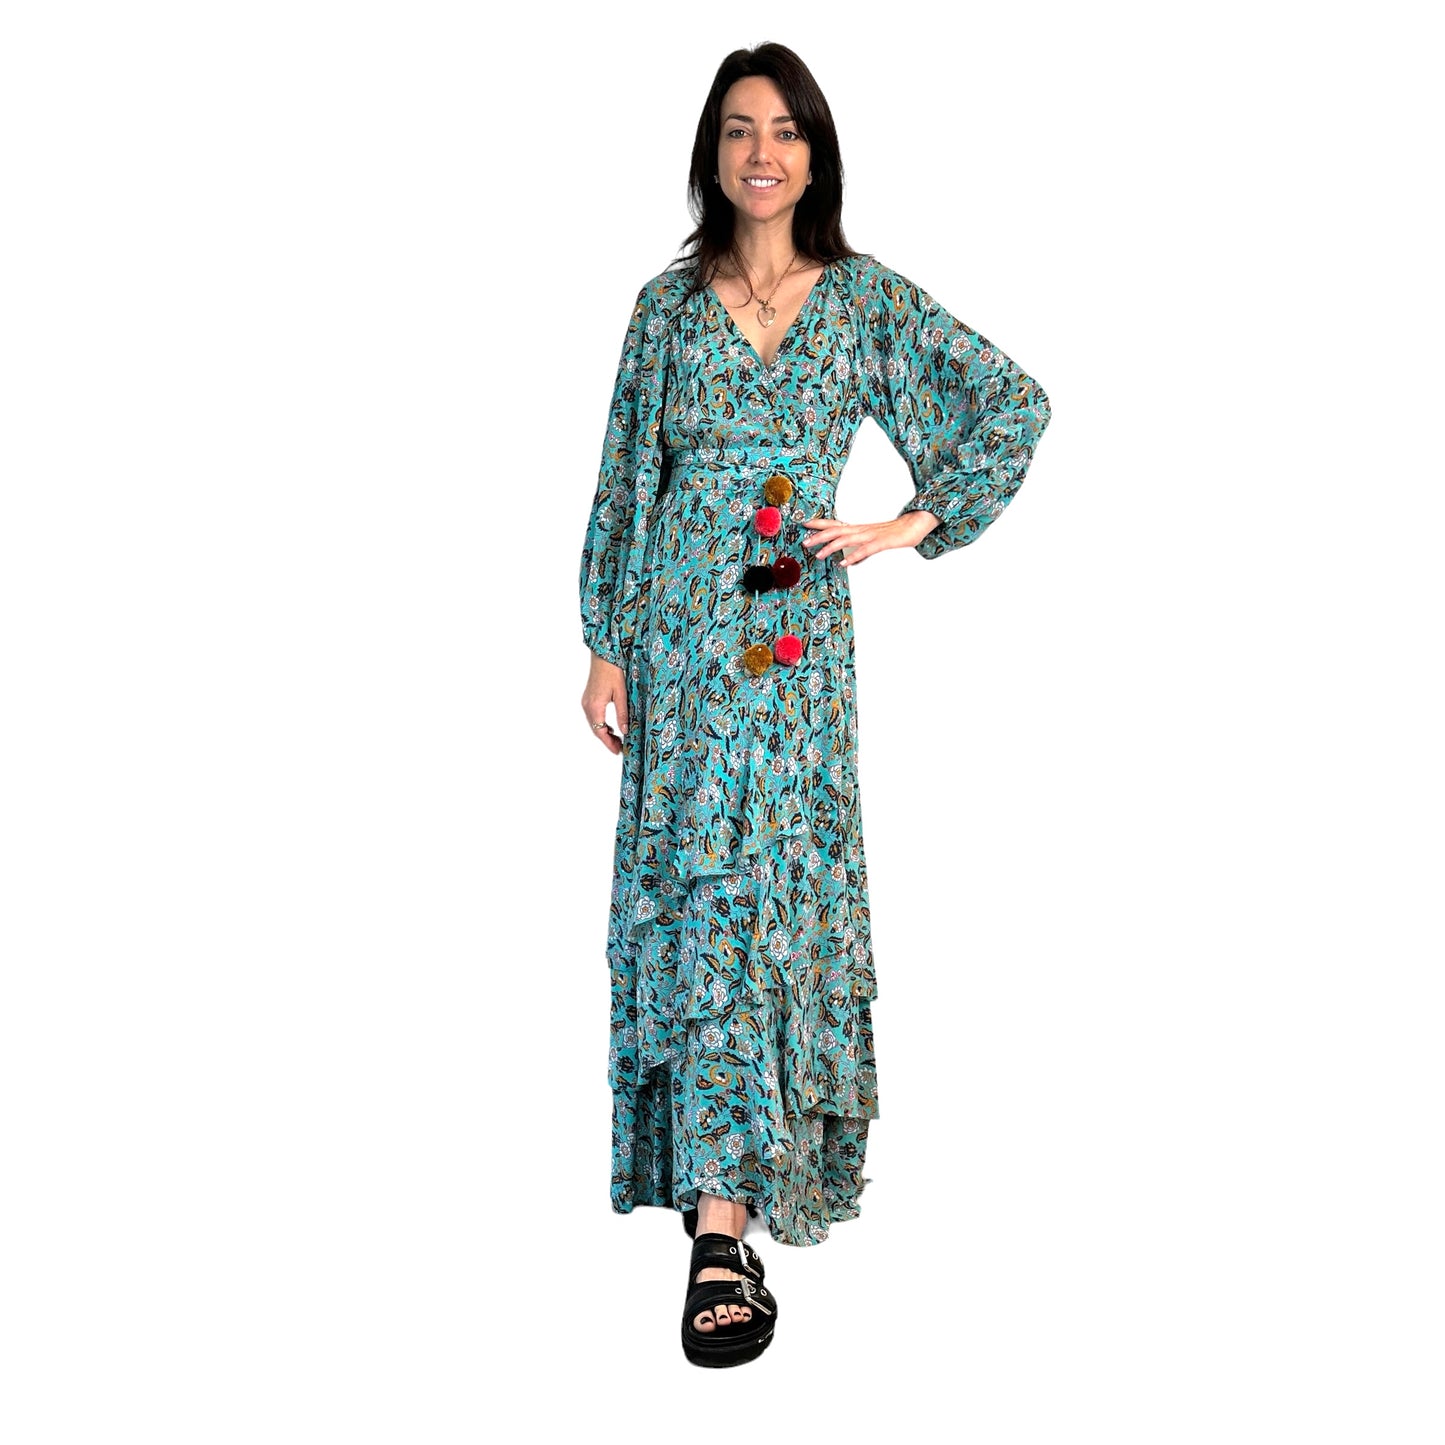 Blue Floral Print Silk Dress - XS/S